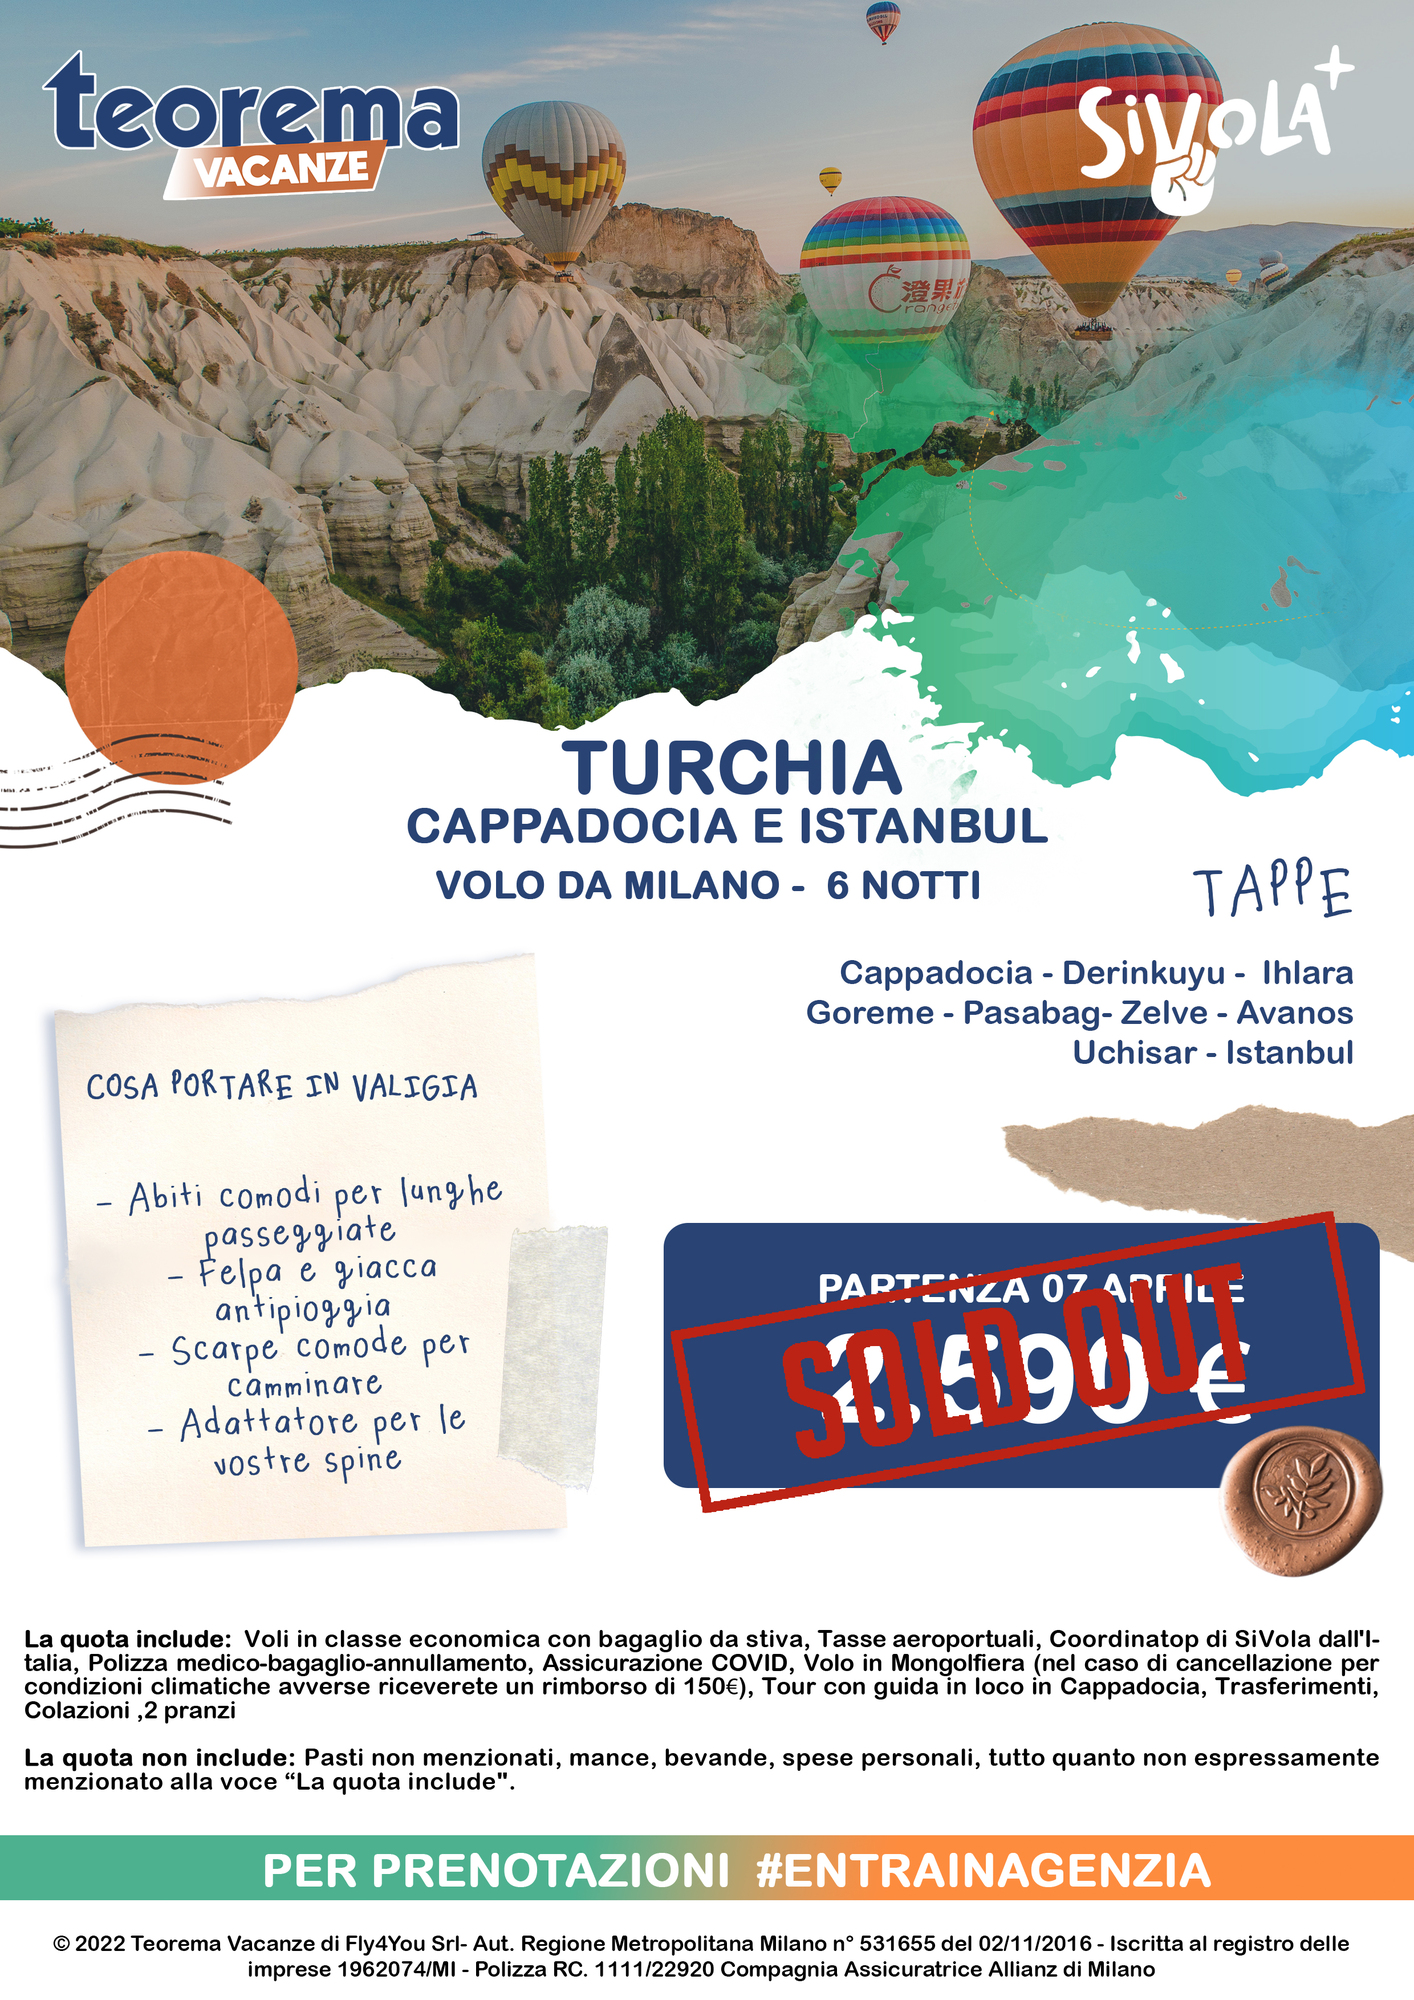 TOUR SIVOLA+ - CAPPADOCIA